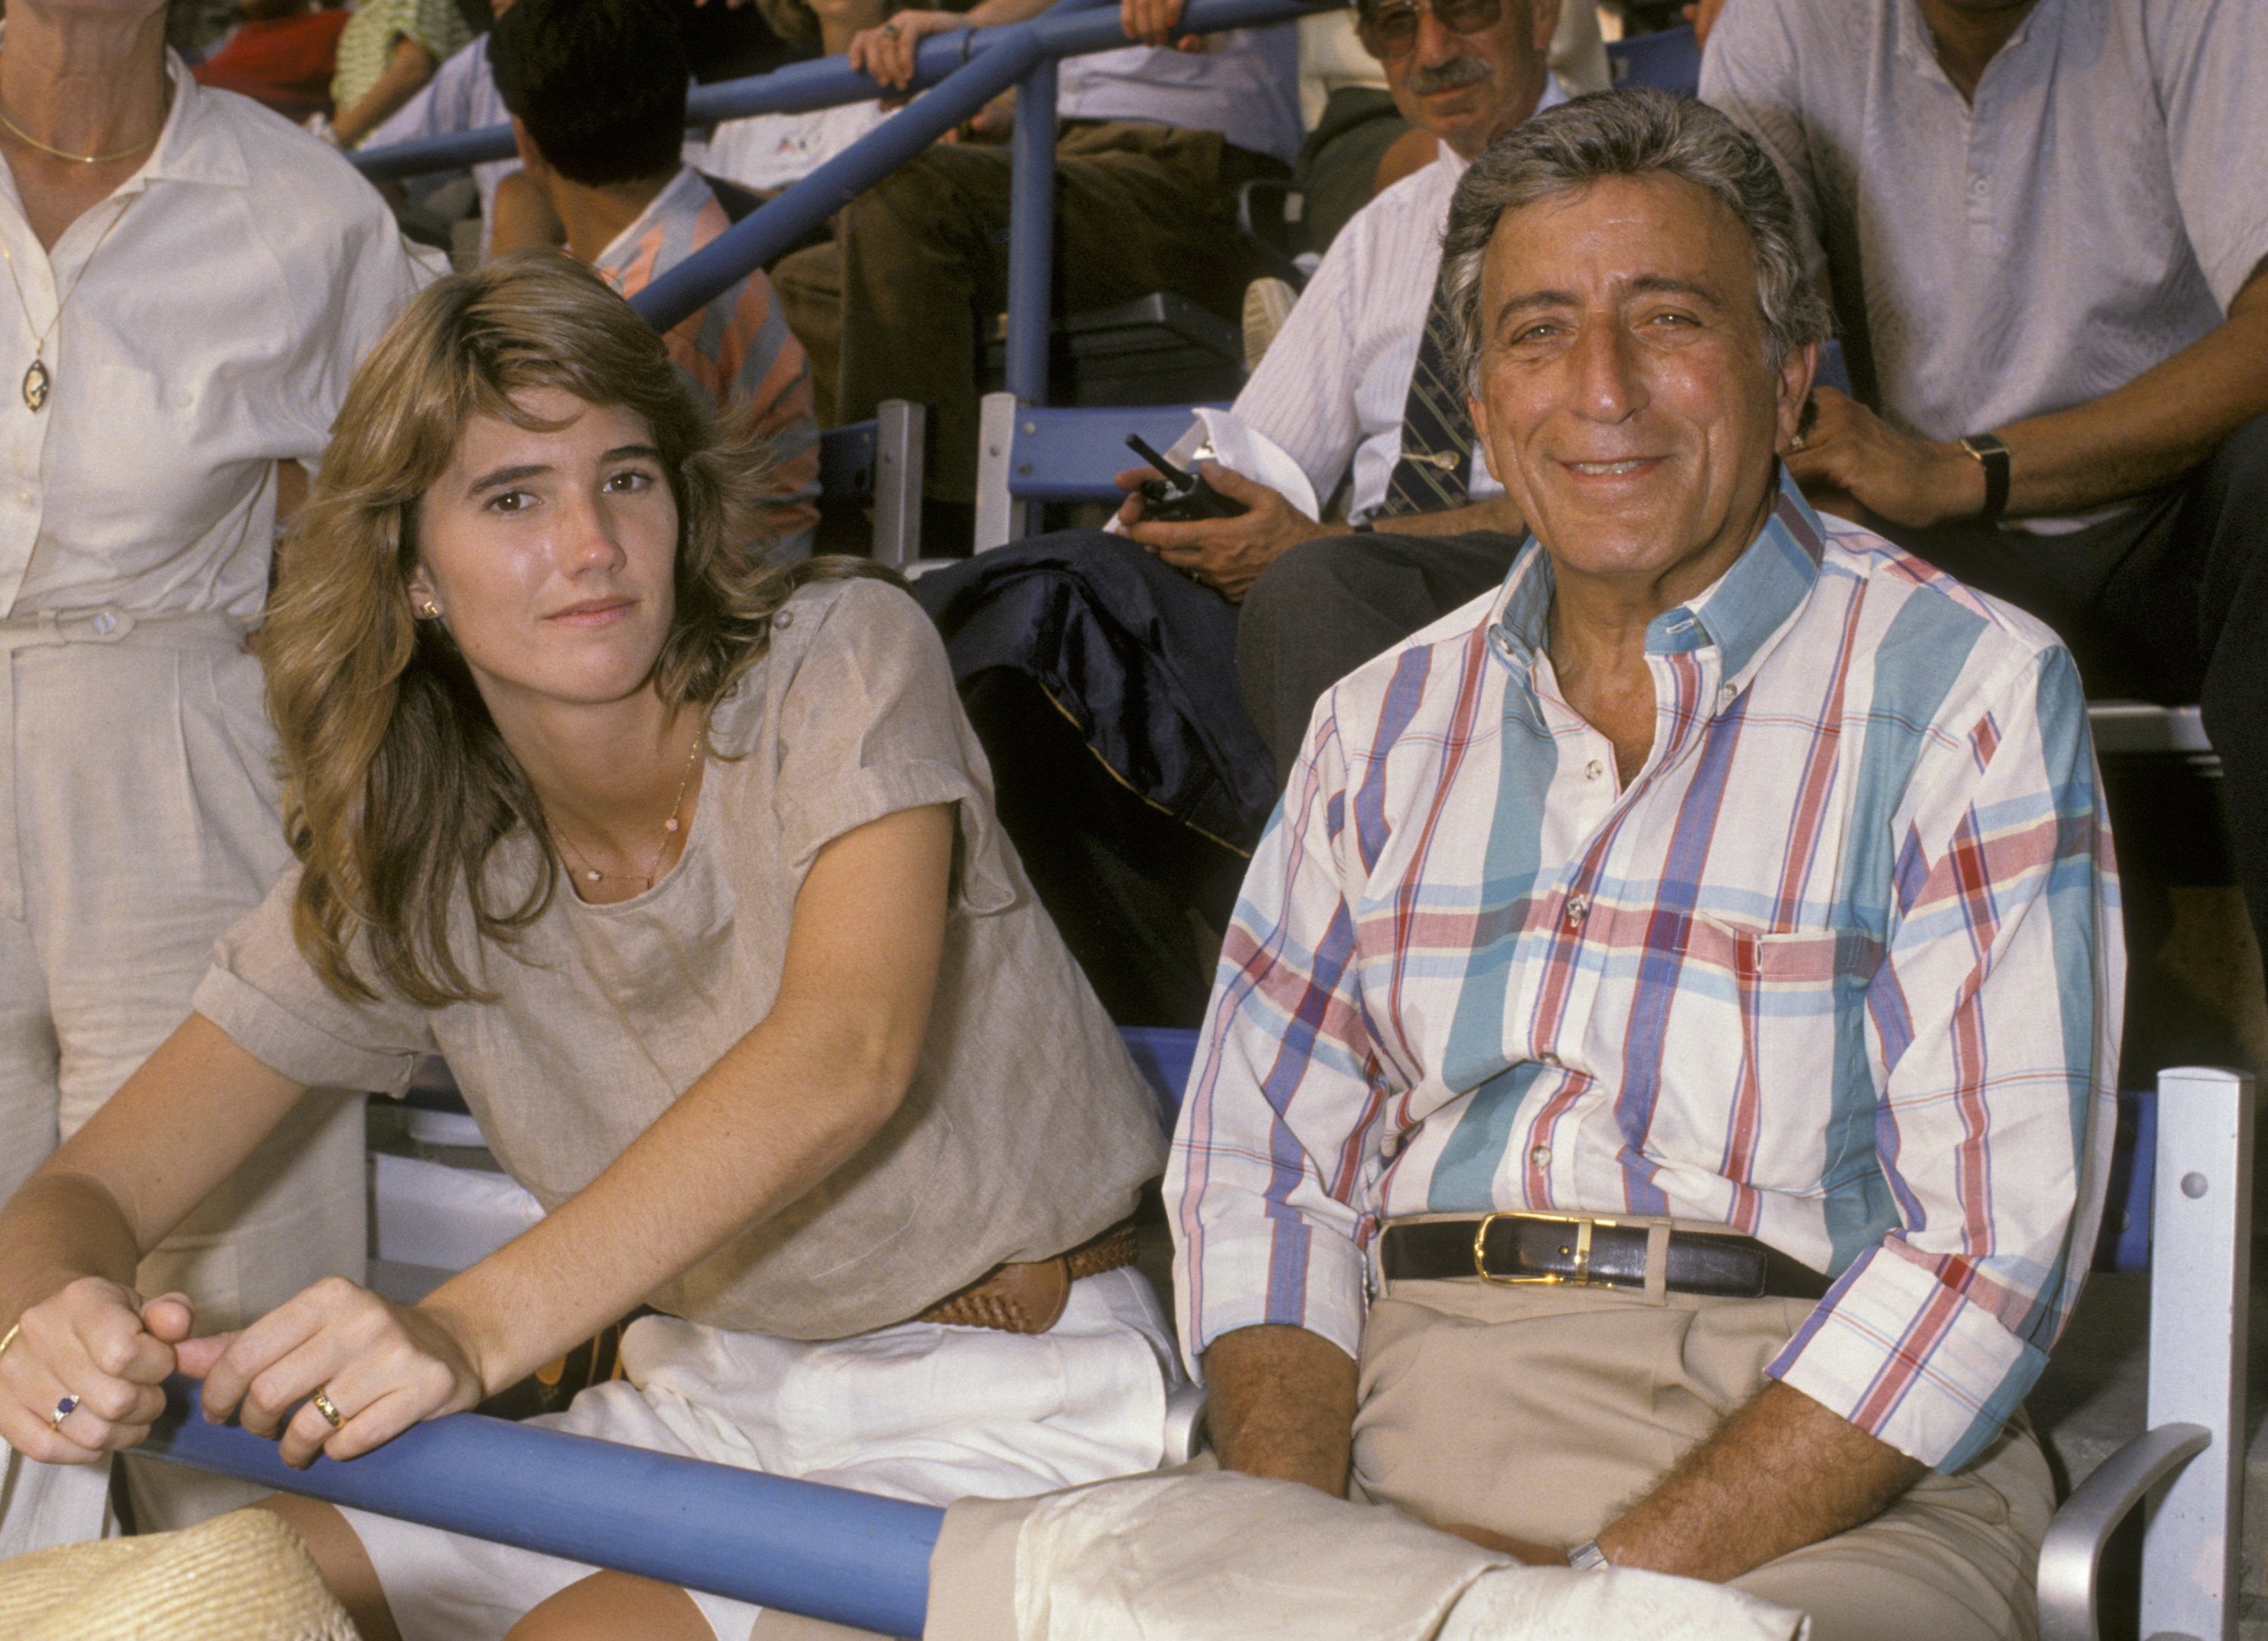 Susan Crow y Tony Bennett durante el US Open de 1989 en Flushing Meadow Park el 10 de septiembre de 1989 en Queens, Nueva York | Foto: Getty Images